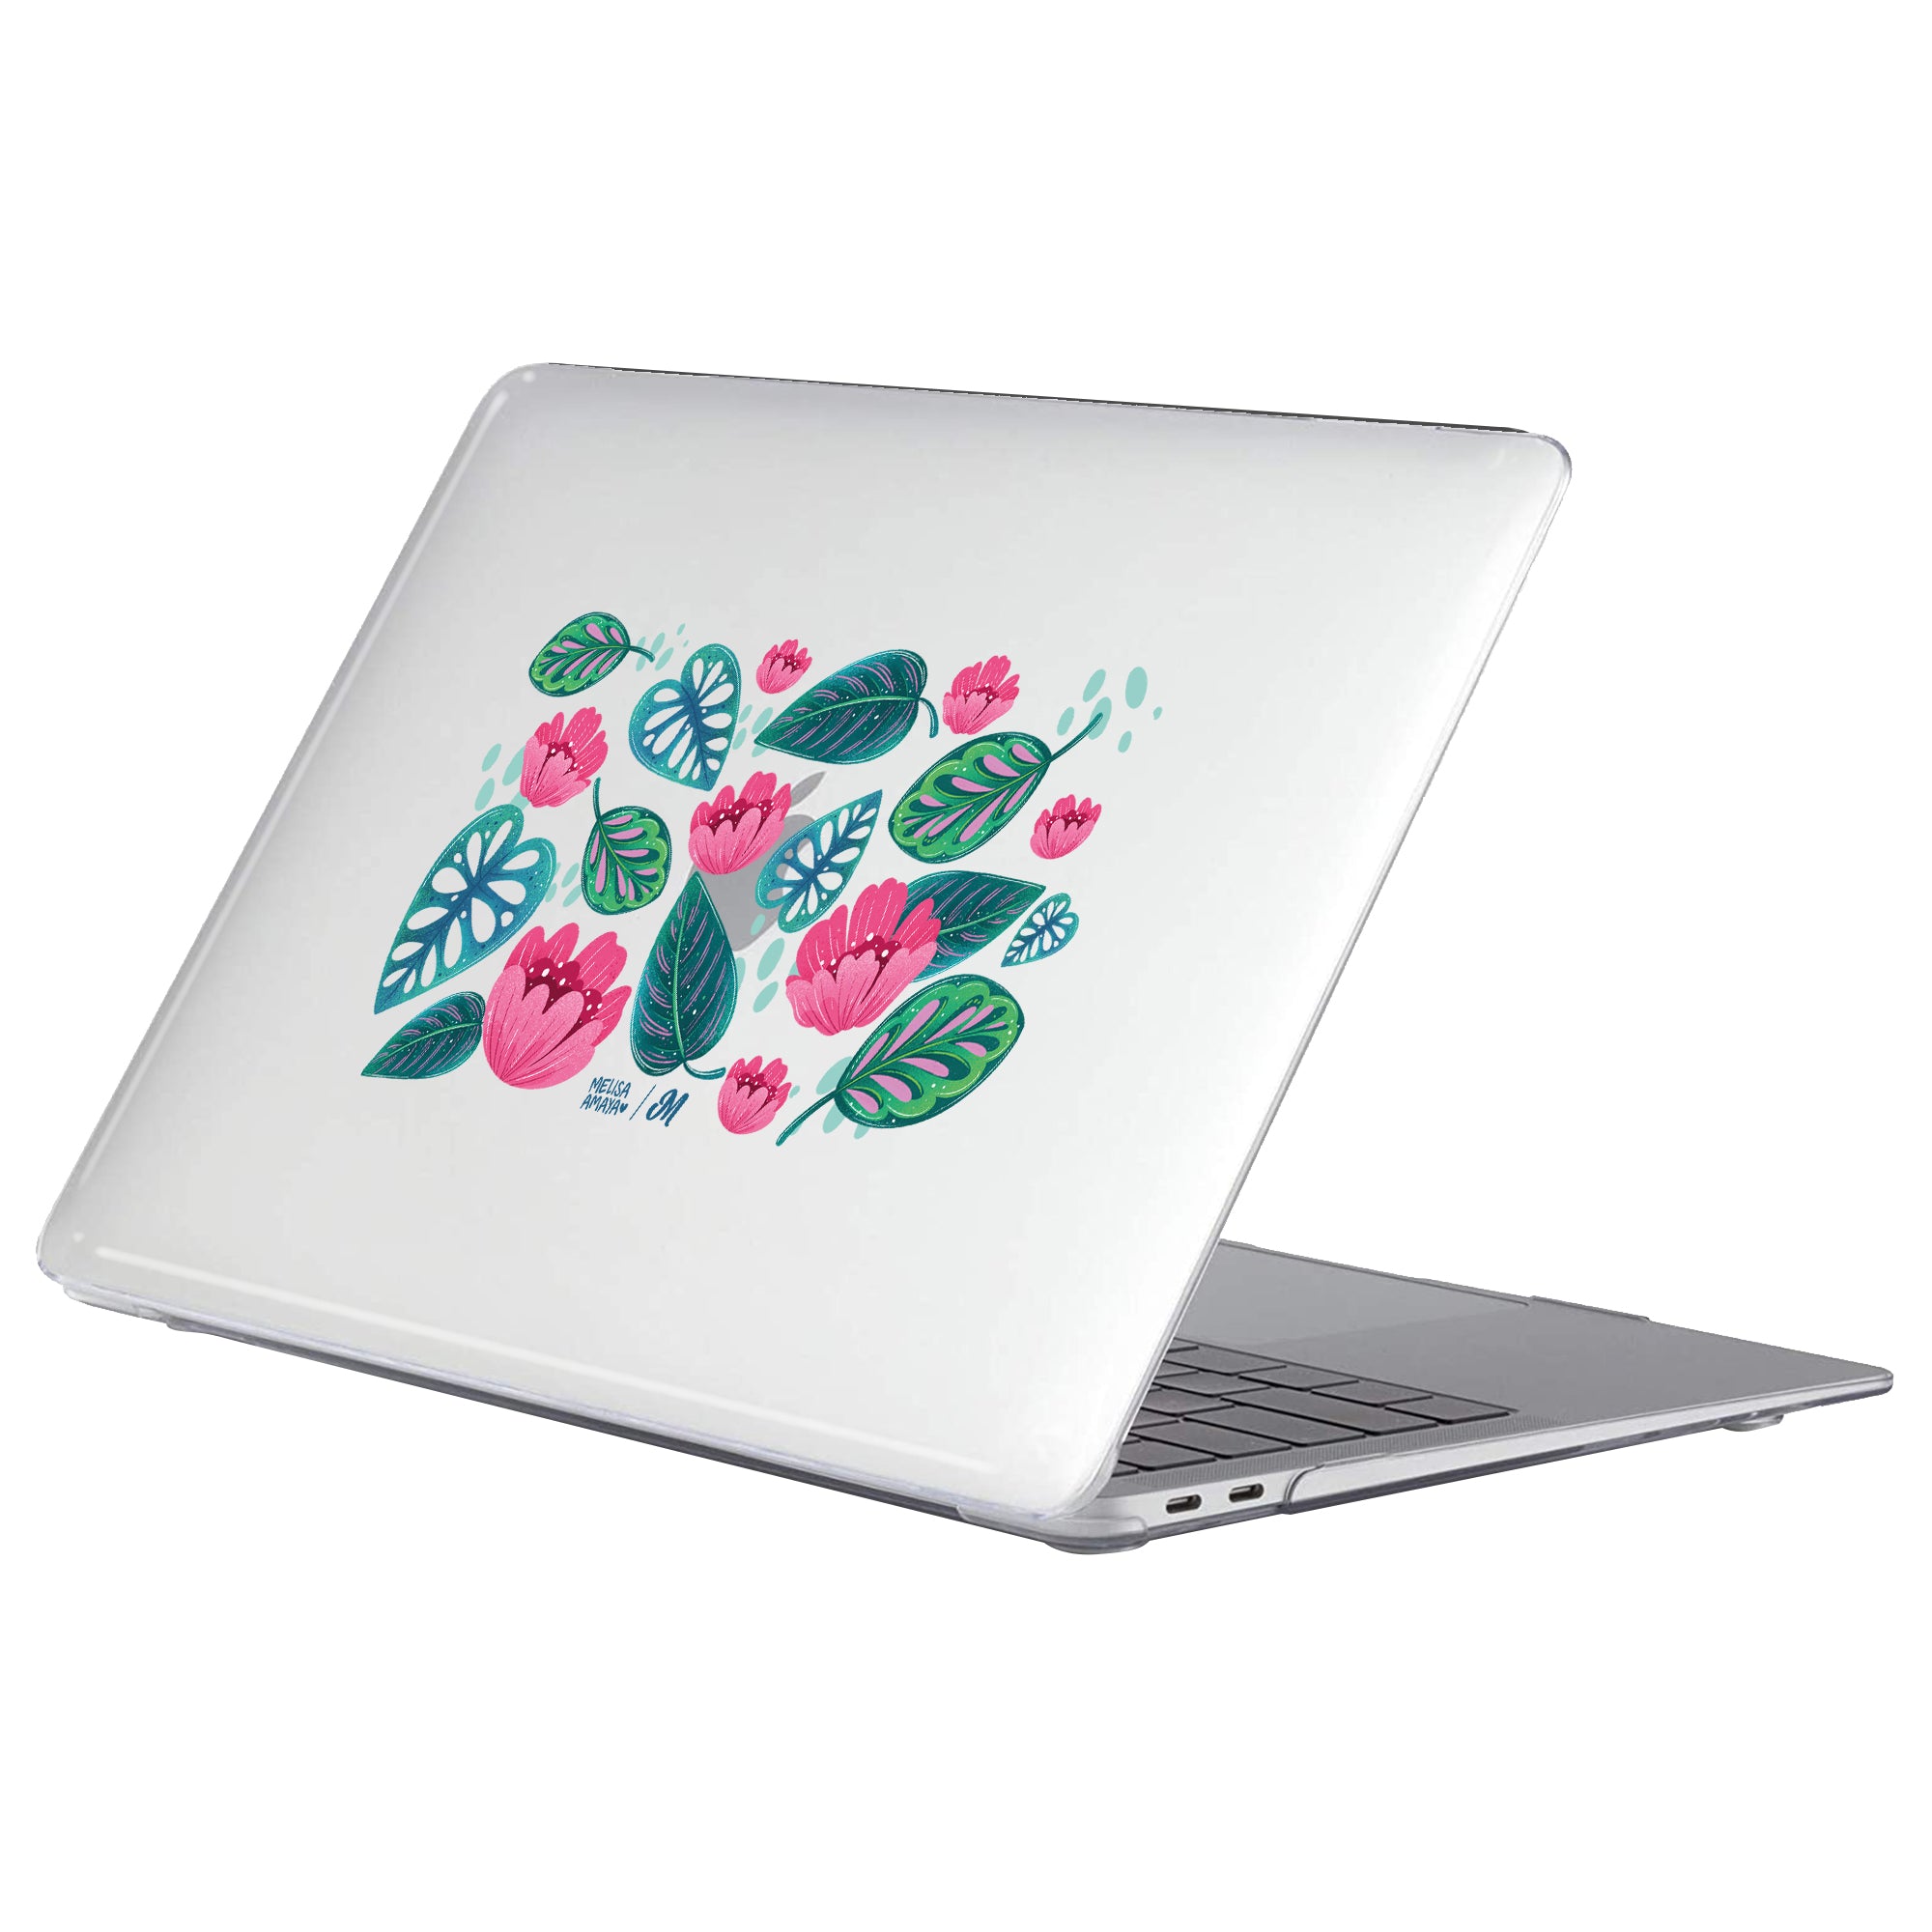 Hojas de Jardín MacBook Case - Mandala Cases